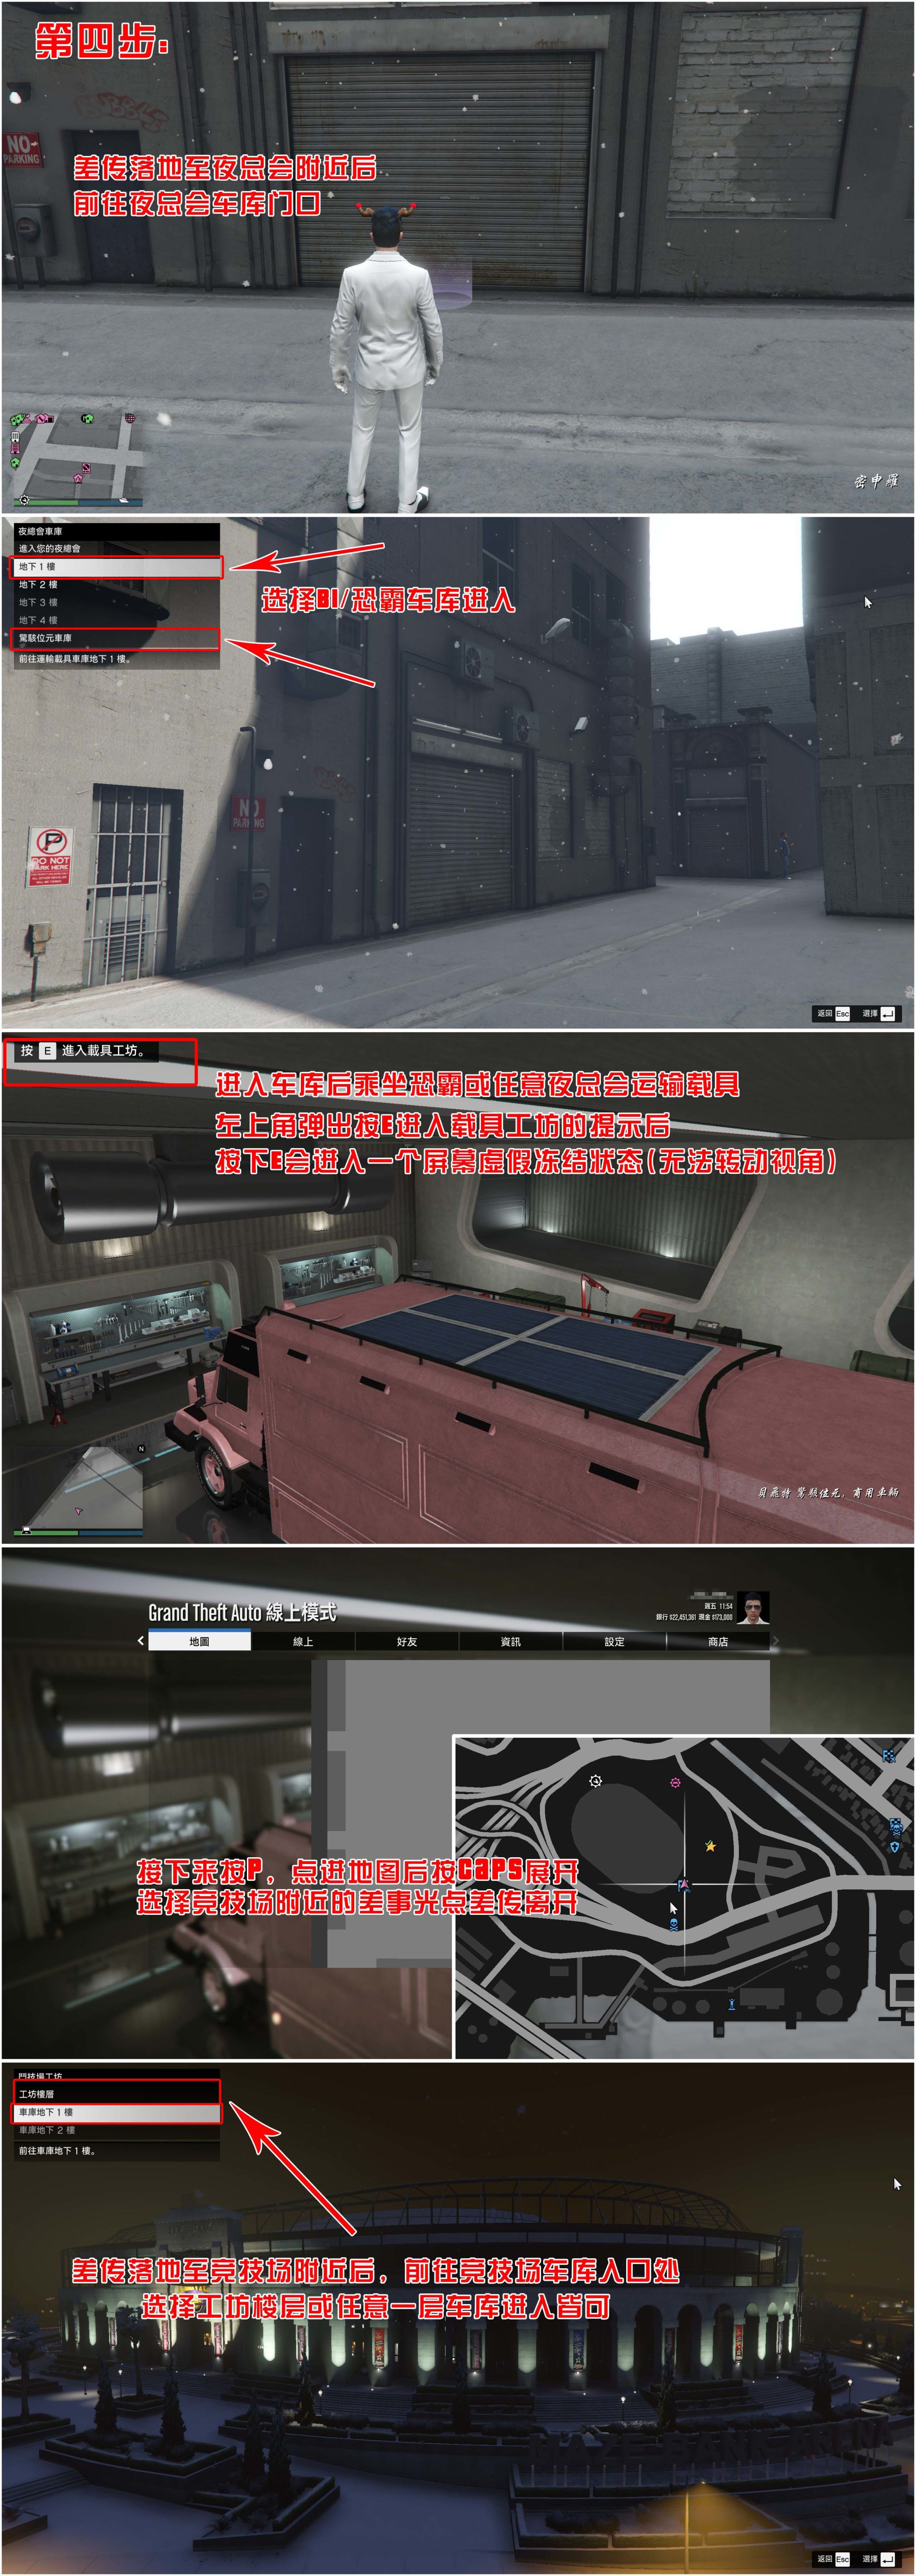 【俠盜獵車手5】GTA 在線模式攻略：獲取載具隱藏塗裝&複製車&變造外貿載具-第4張